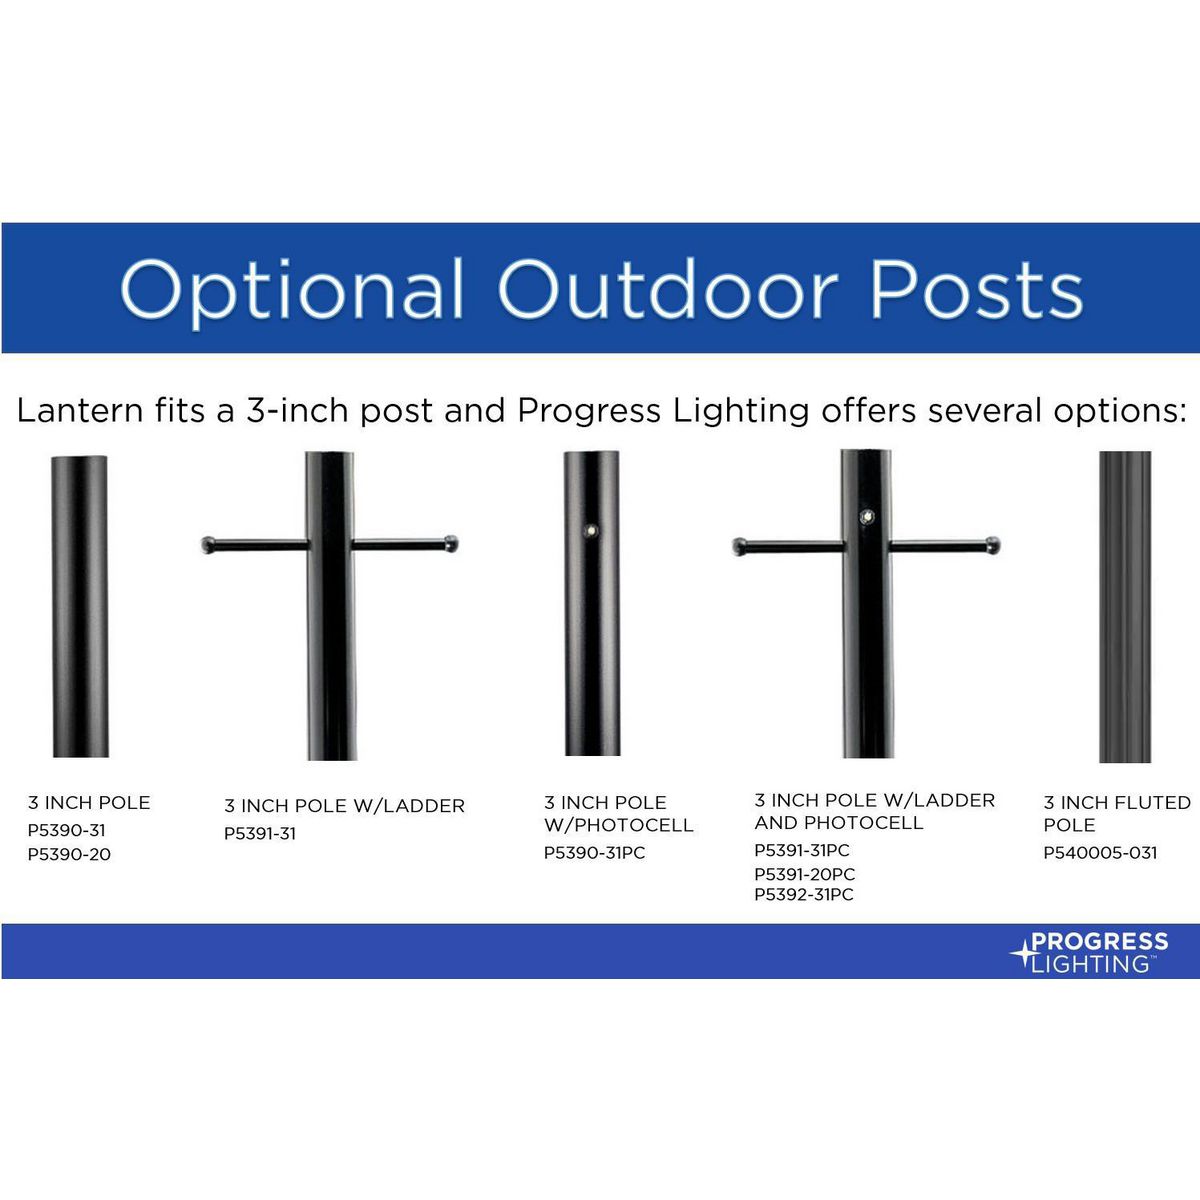 Gunther 1-Light Outdoor Post Light